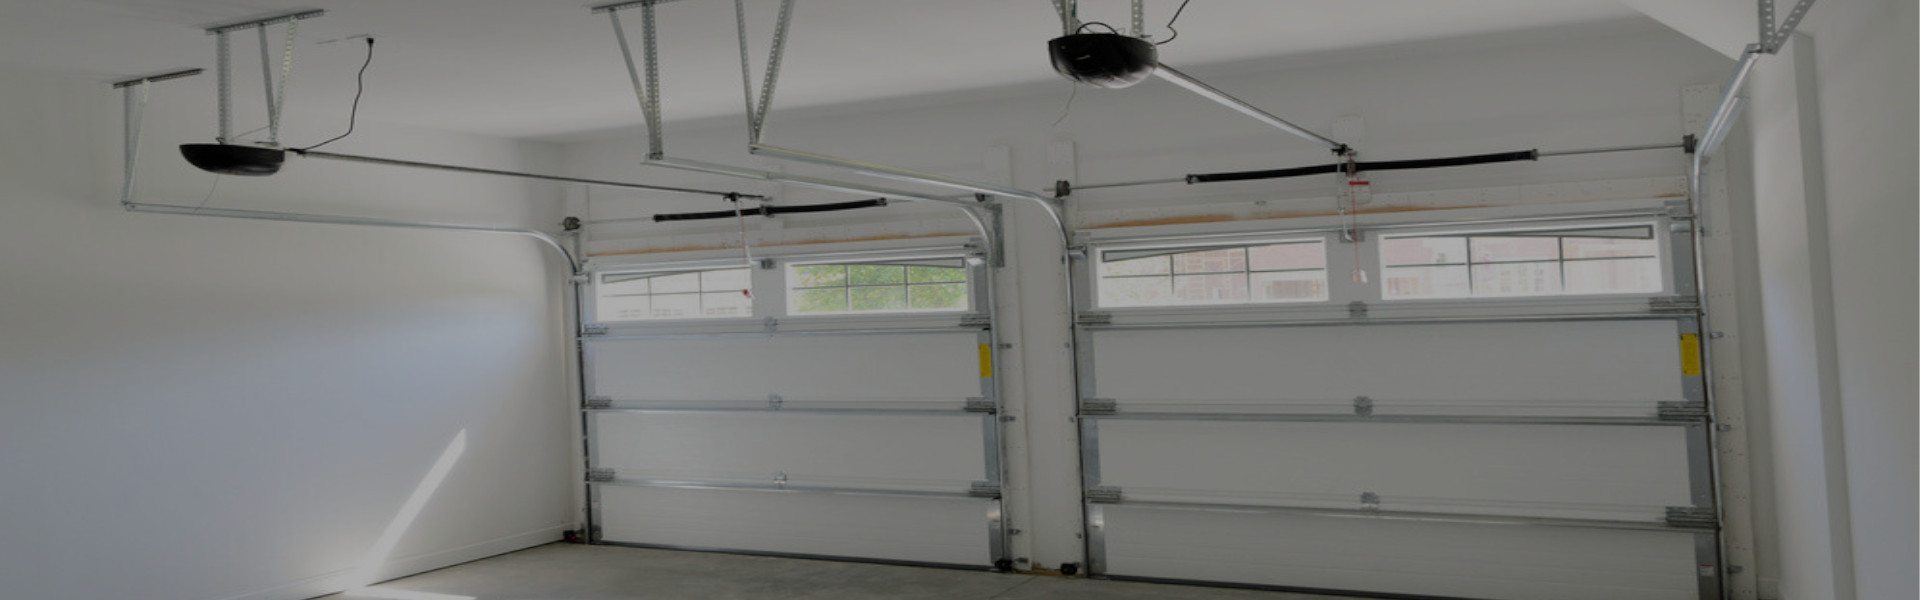 Slider Garage Door Repair, Glaziers in Newbury Park, Gants Hill, IG2